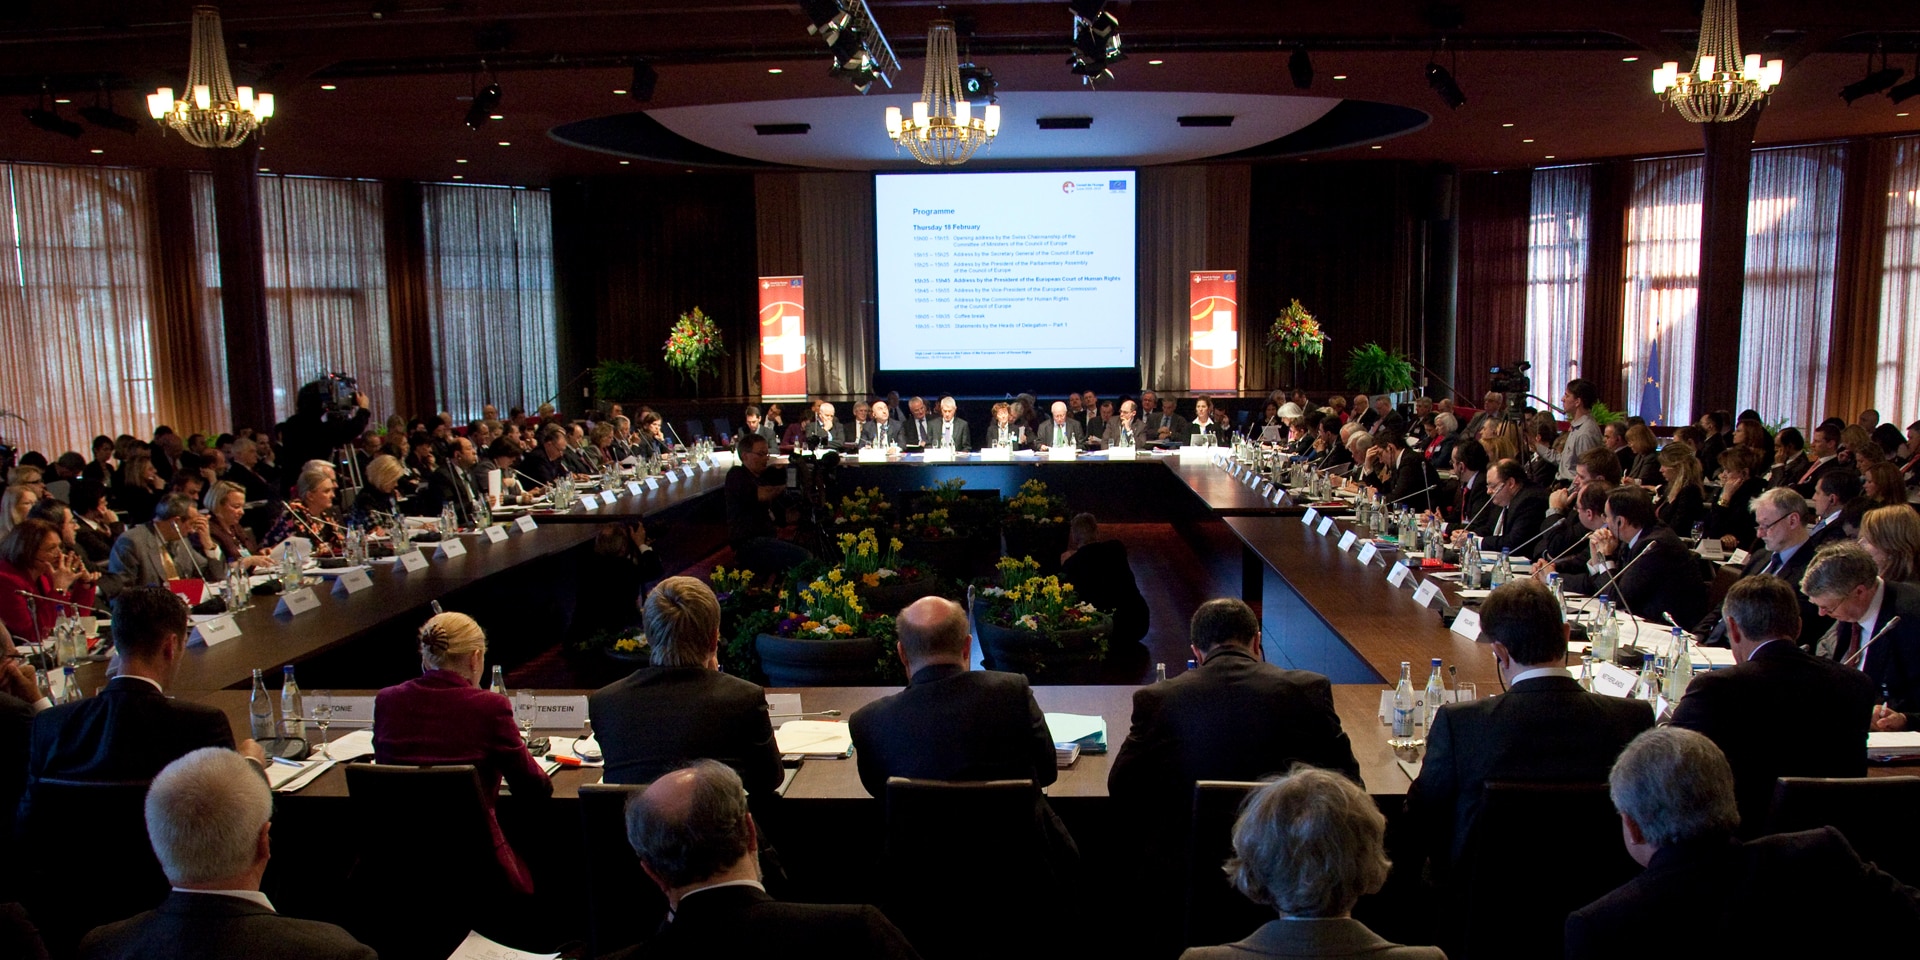 La photo a été prise lors de la Conférence ministérielle du Conseil de l'Europe en février 2010 à Interlaken : elle montre une salle pleine à craquer de participants.